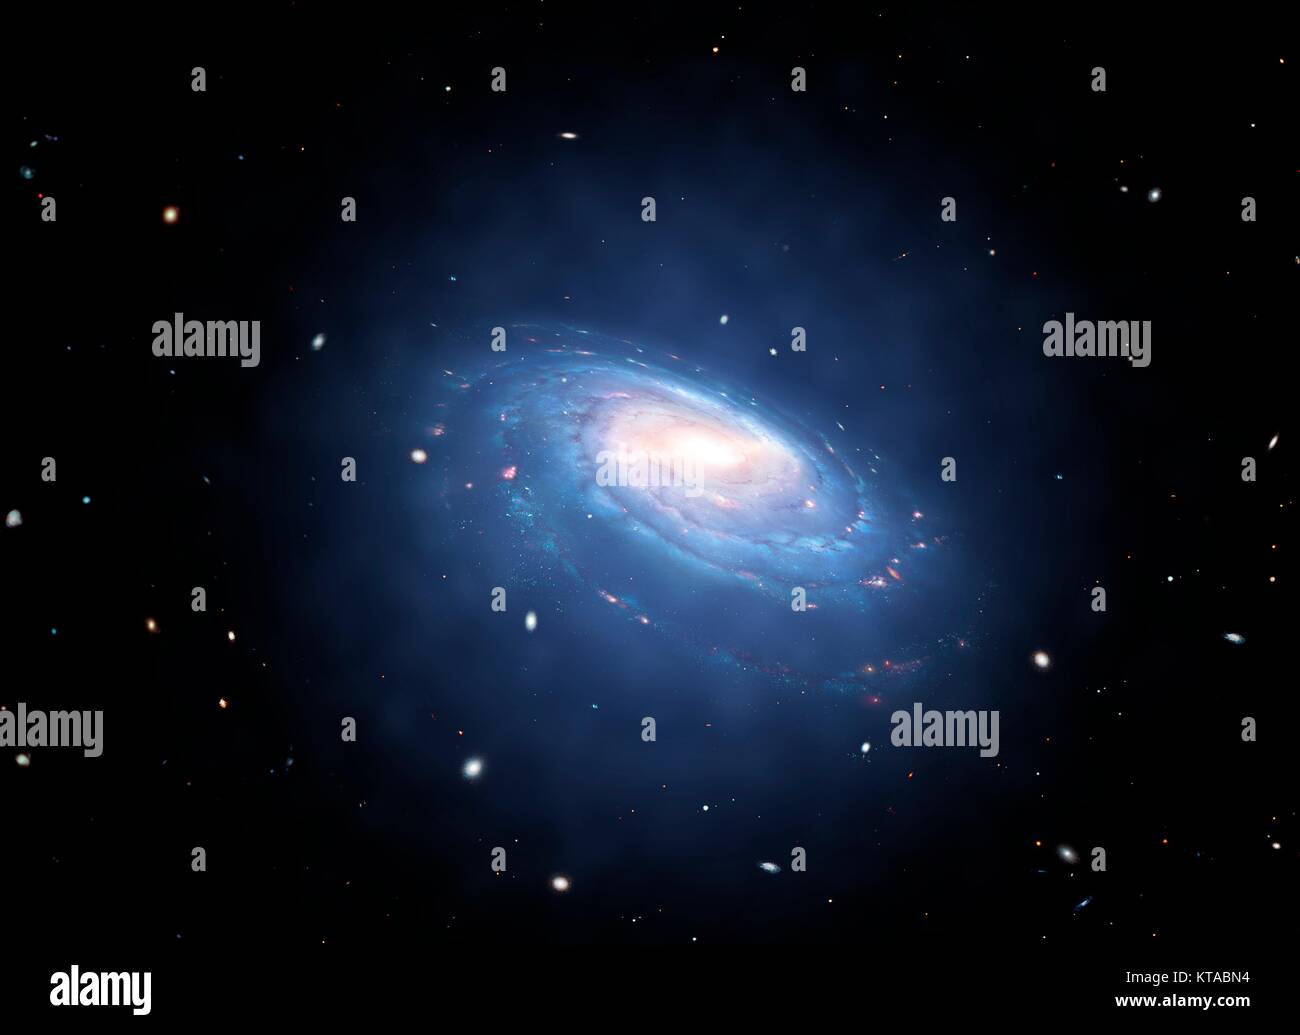 Galaxy y asociados halo de materia oscura. Un halo de materia oscura es un componente que enshrouds galaxy supone el disco galáctico y se extiende más allá del borde de la galaxia visible. Su masa domina la masa total del sistema Galaxy. Supuestamente compuesto de materia oscura, halos no se pueden observar directamente, pero su existencia se infiere a través de sus efectos sobre los movimientos de las estrellas y el gas de las galaxias. Foto de stock